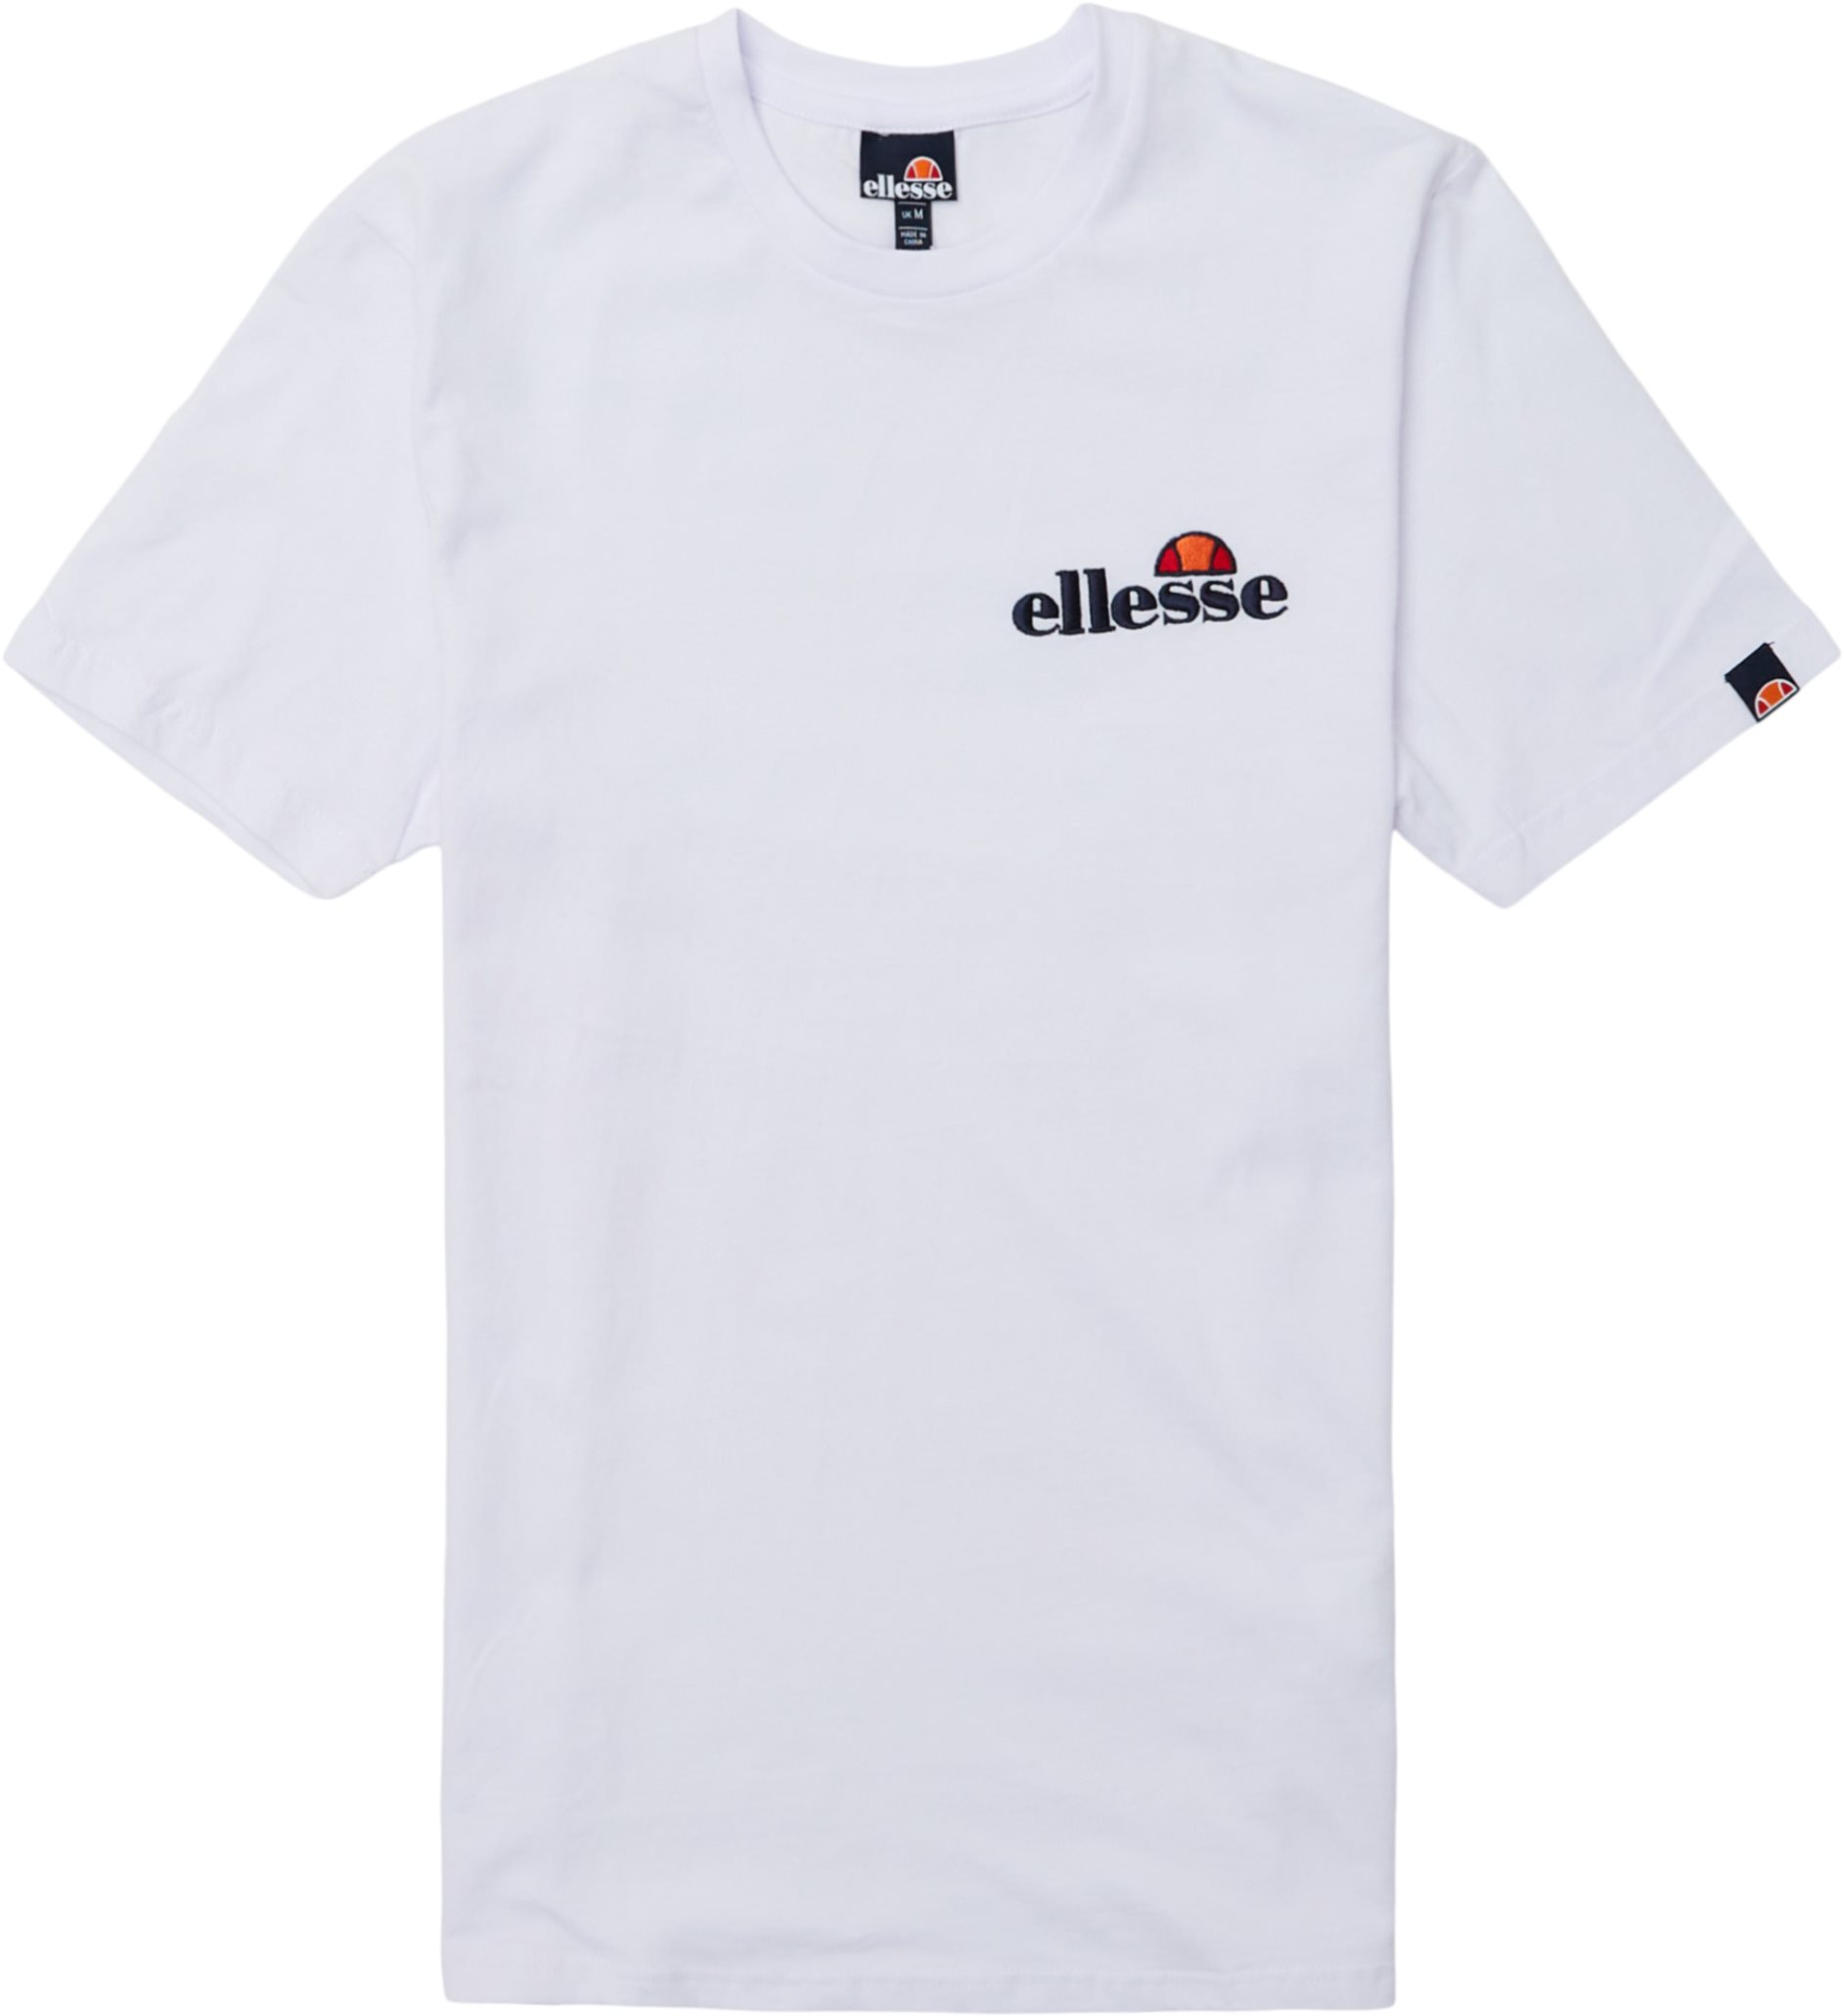 El Voodoo Tee - T-shirts - Regular fit - White